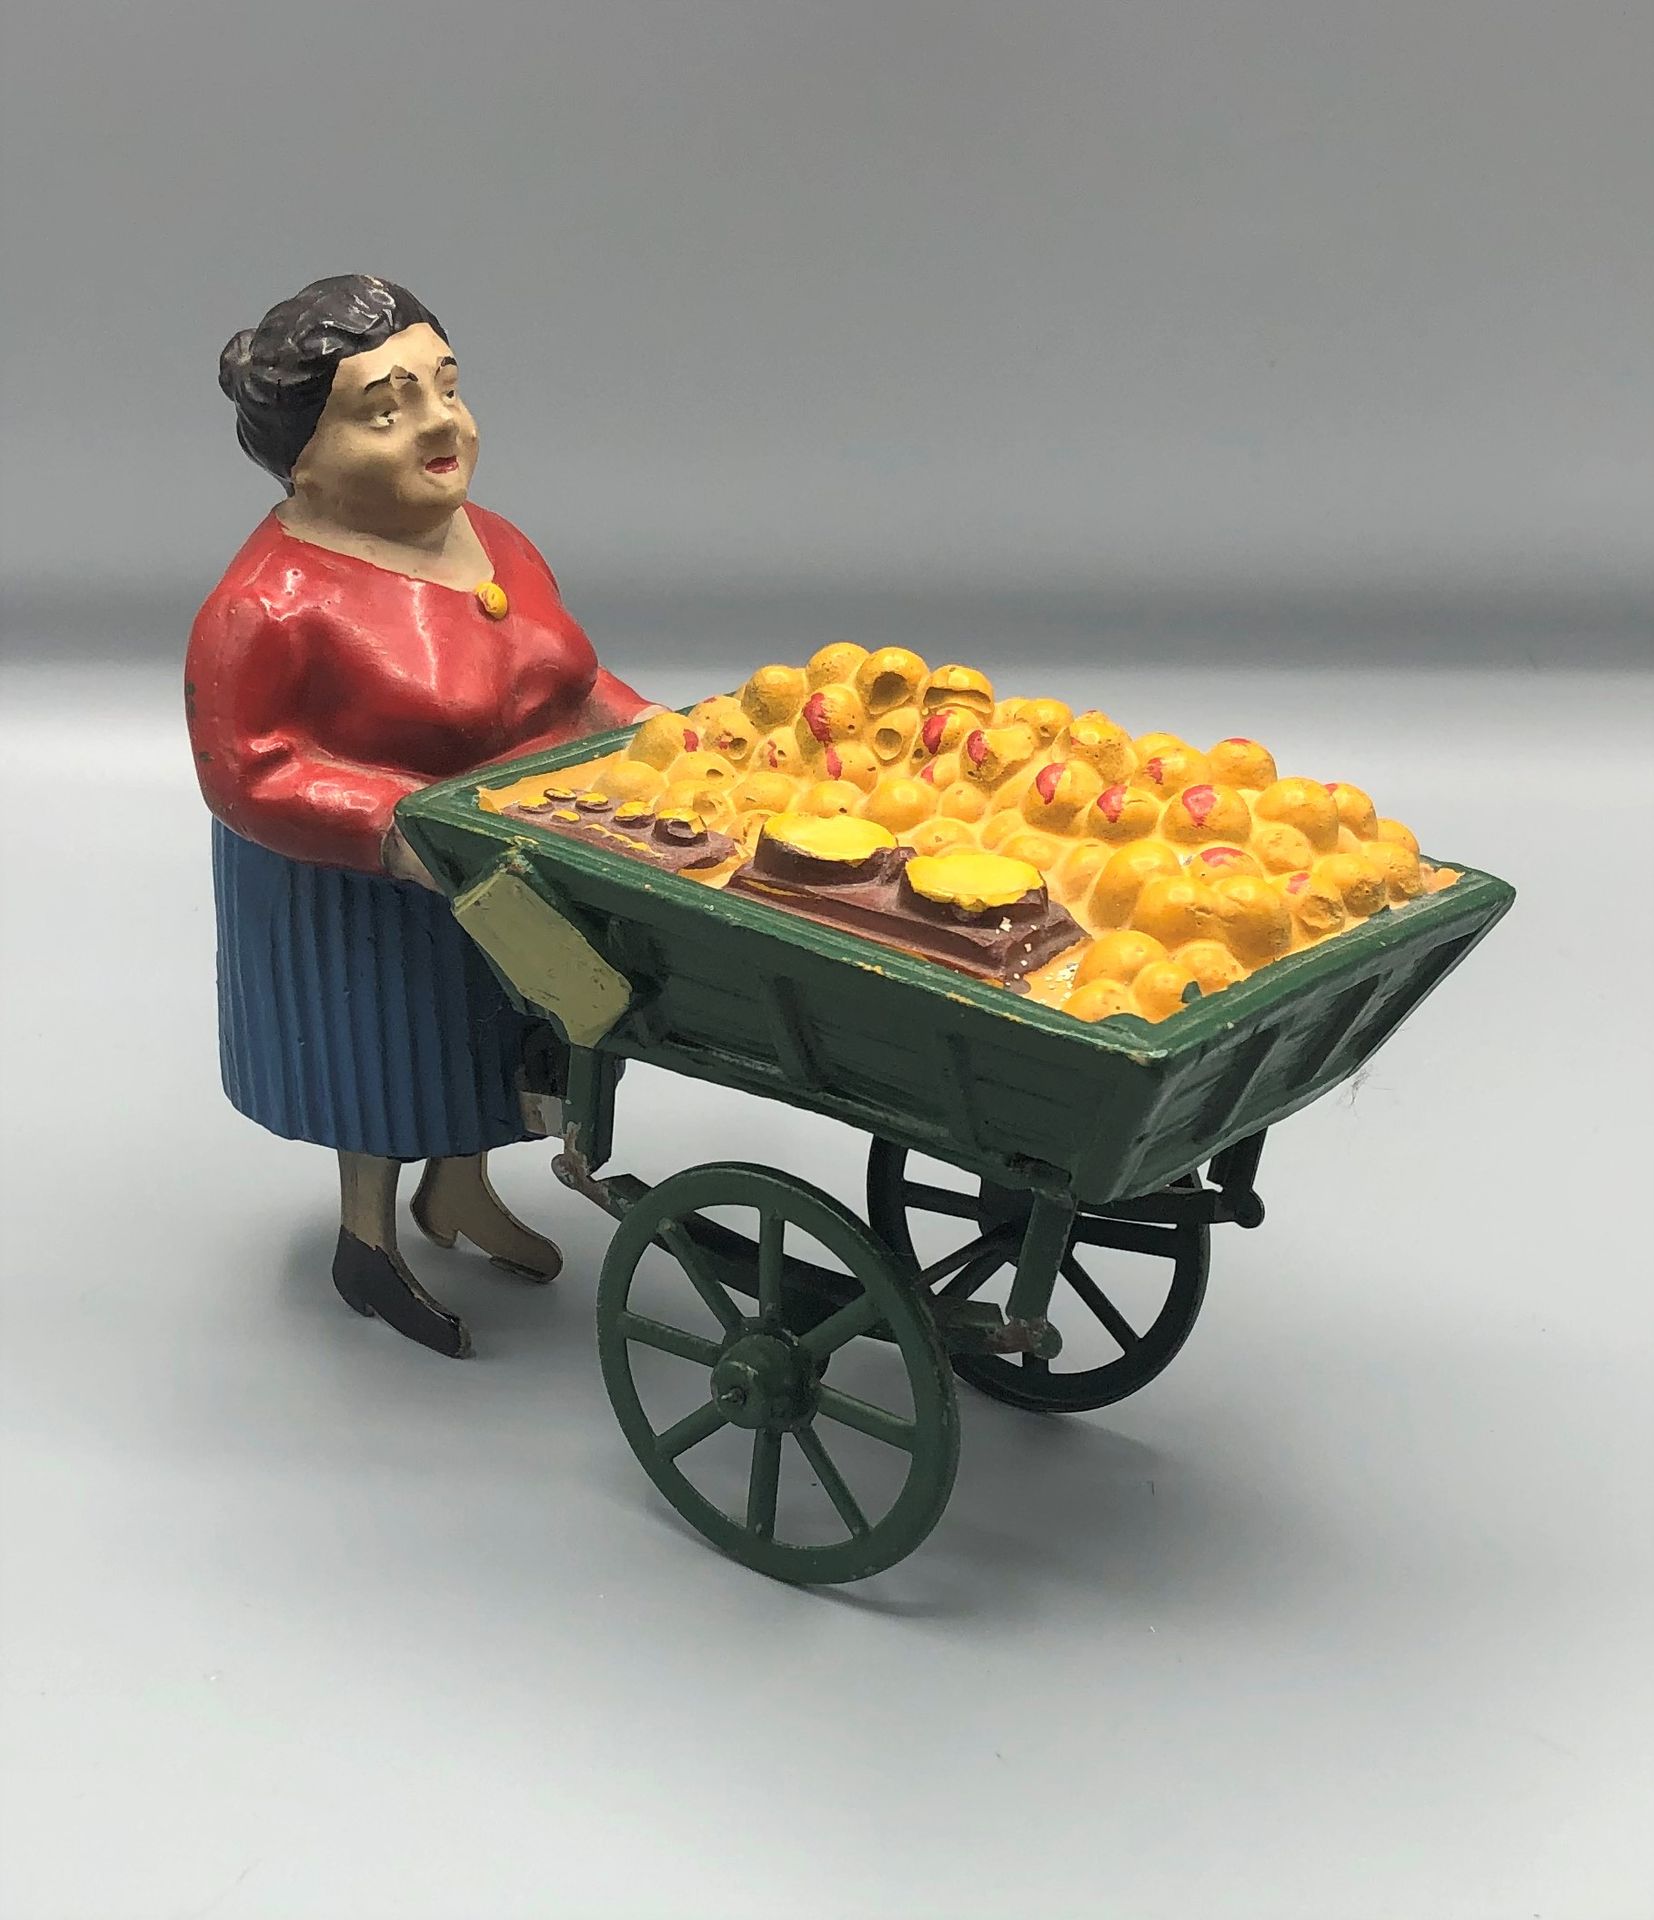 Null 法国玩具

金属和构件的橙色商人，推着他的摊位的机械角色

1930 - 1940



使用条件

更多信息请联系该研究。